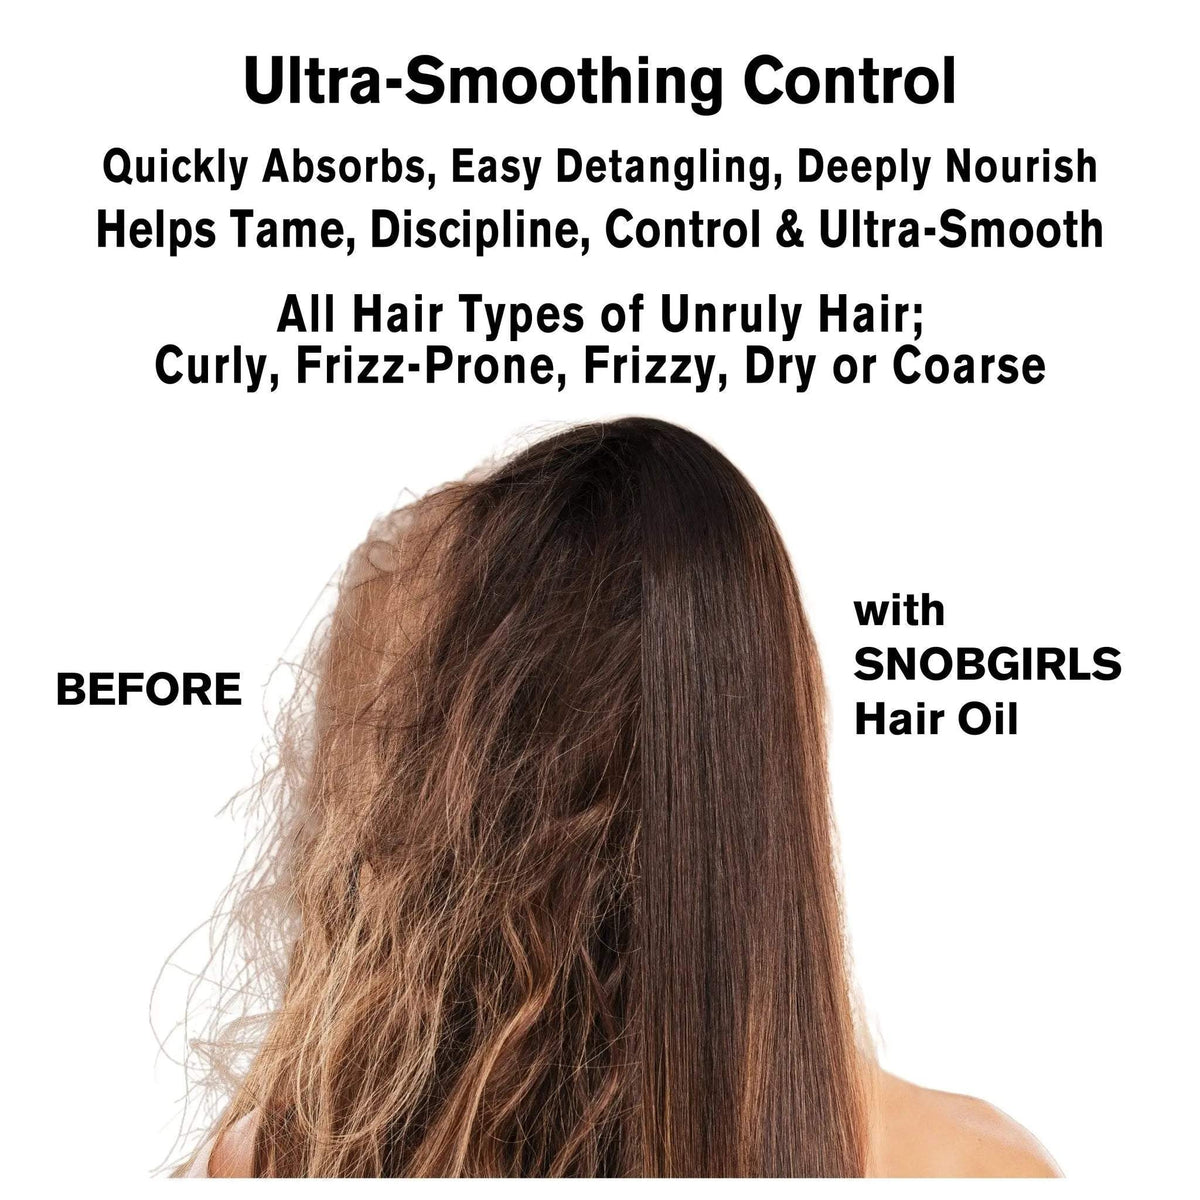 Trio CURALIGN Vegan Shampoo, Conditioner, Hair Oil for ULTRA-SMOOTHINGvegan shampoo conditionerSNOBGIRLS.com